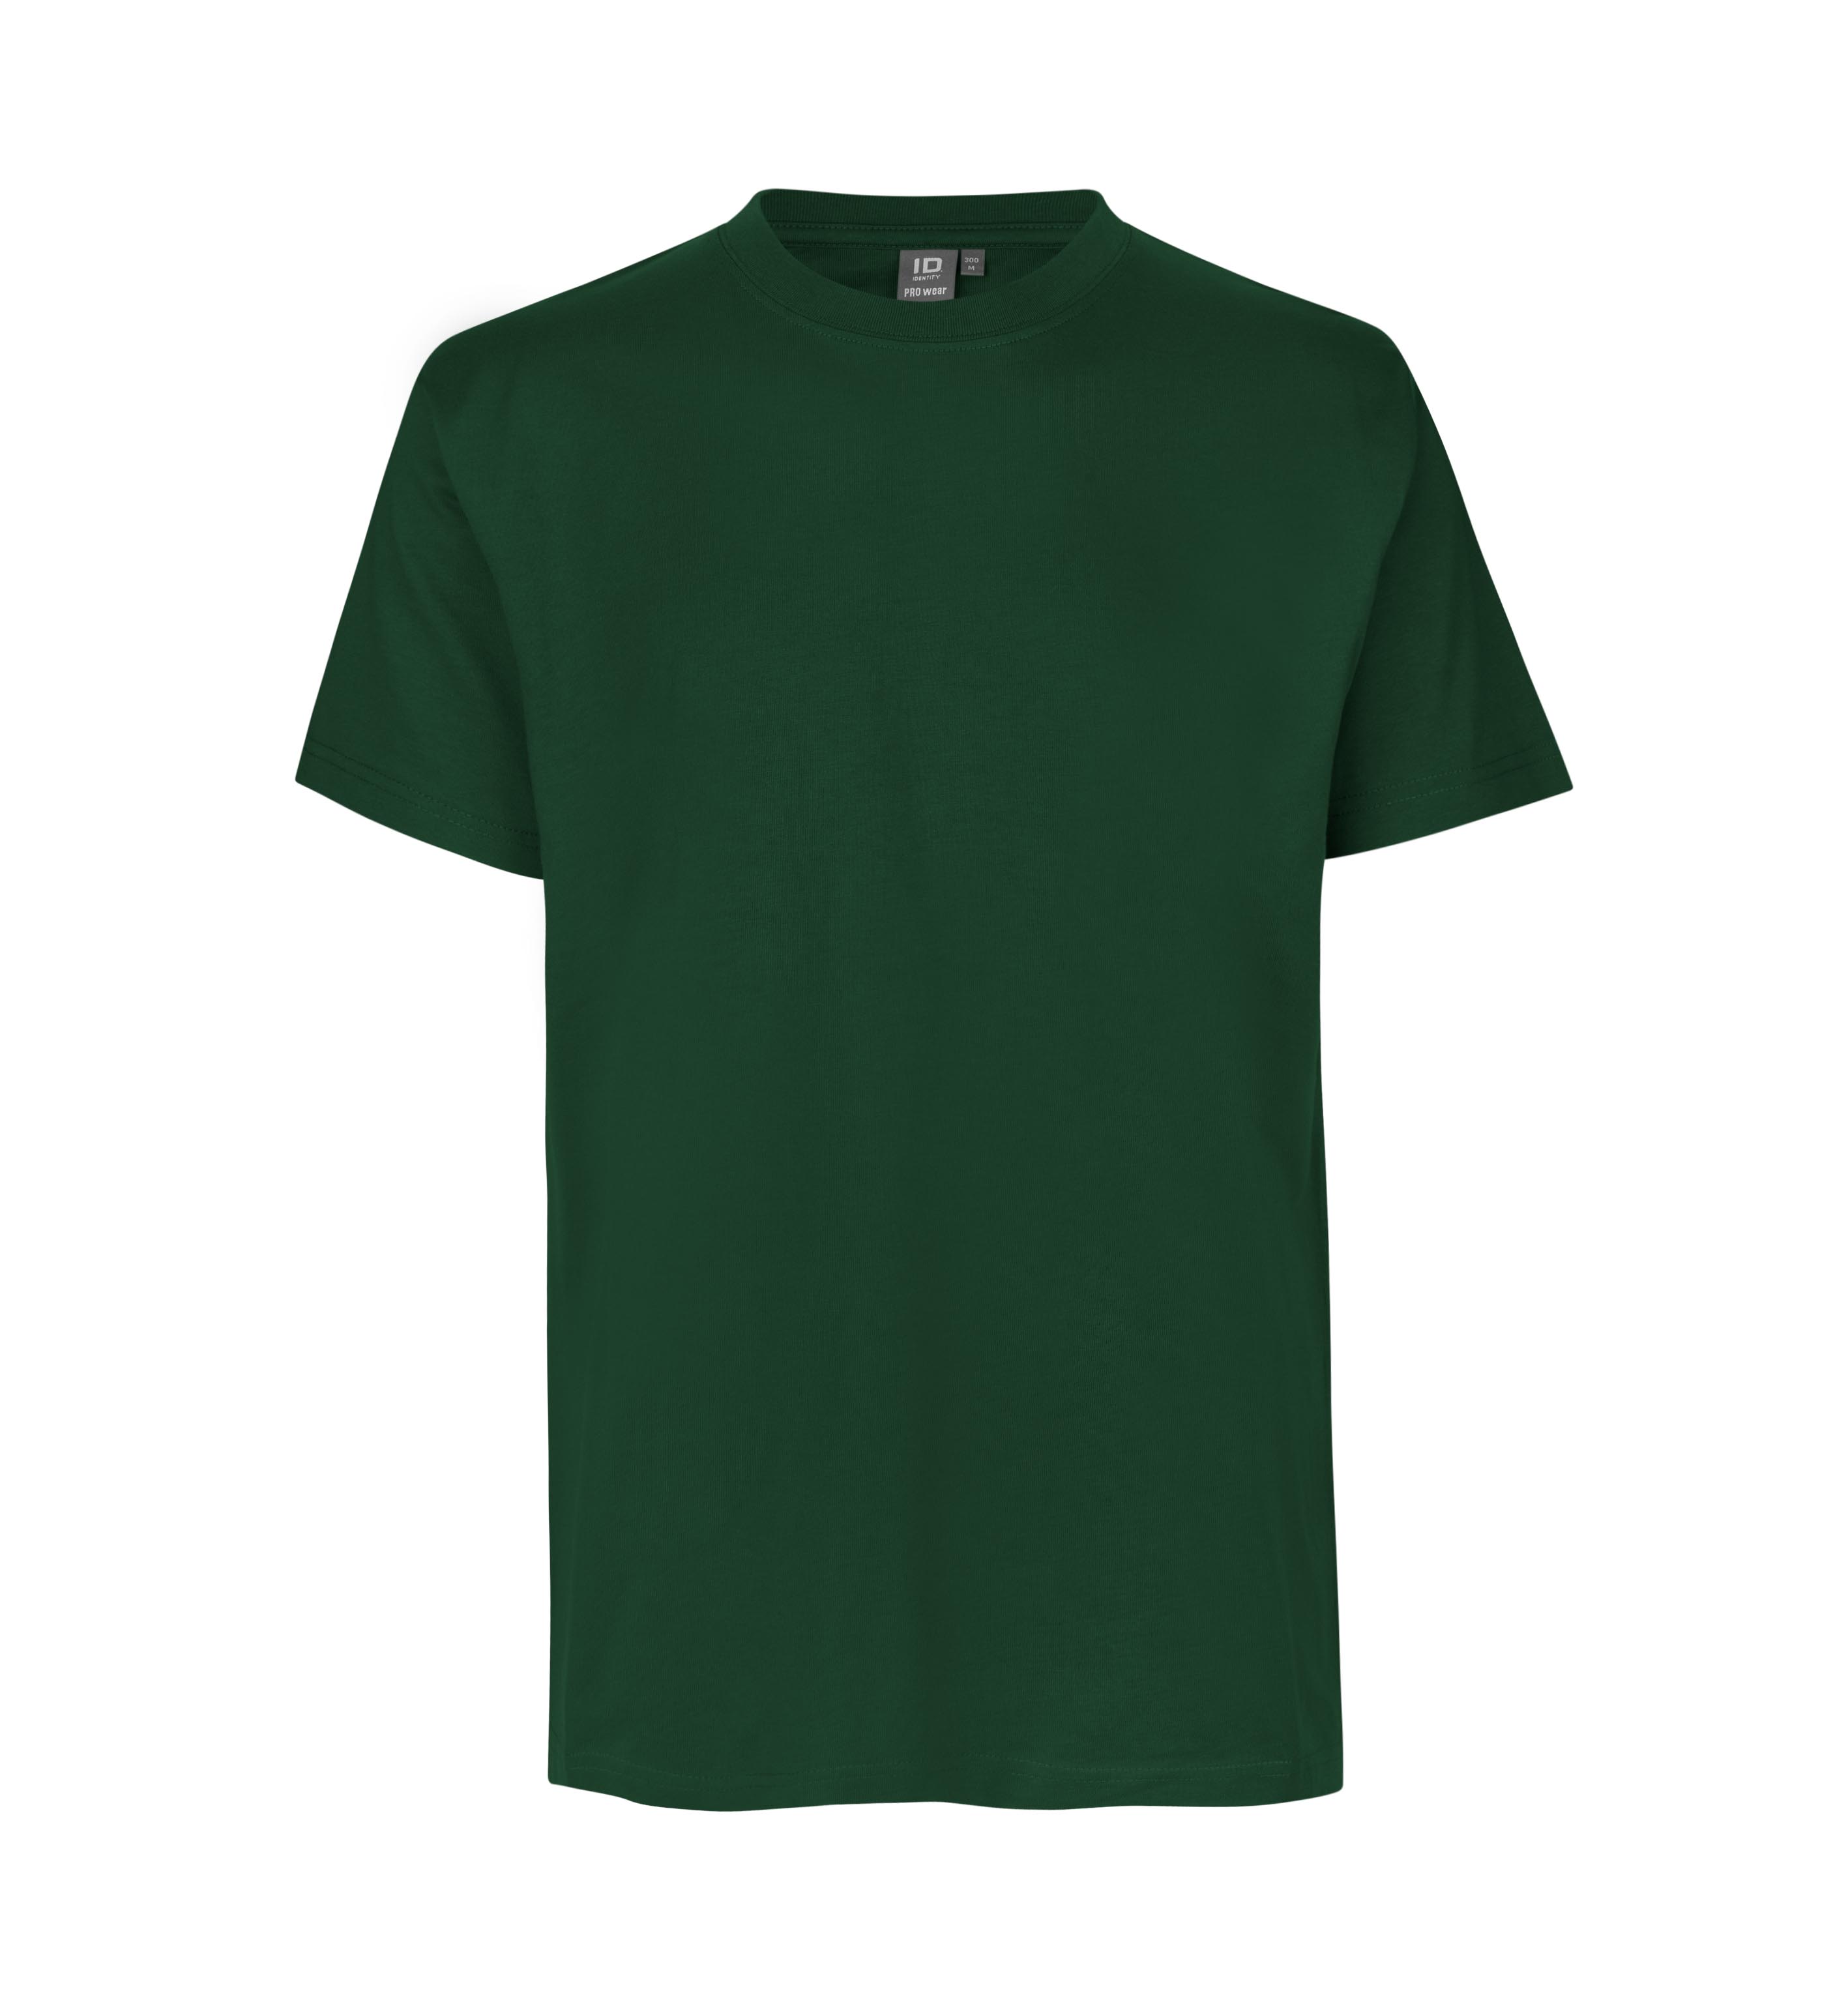 PRO Wear work T-shirt 210-220 g/m² ID Identity® bottle green L